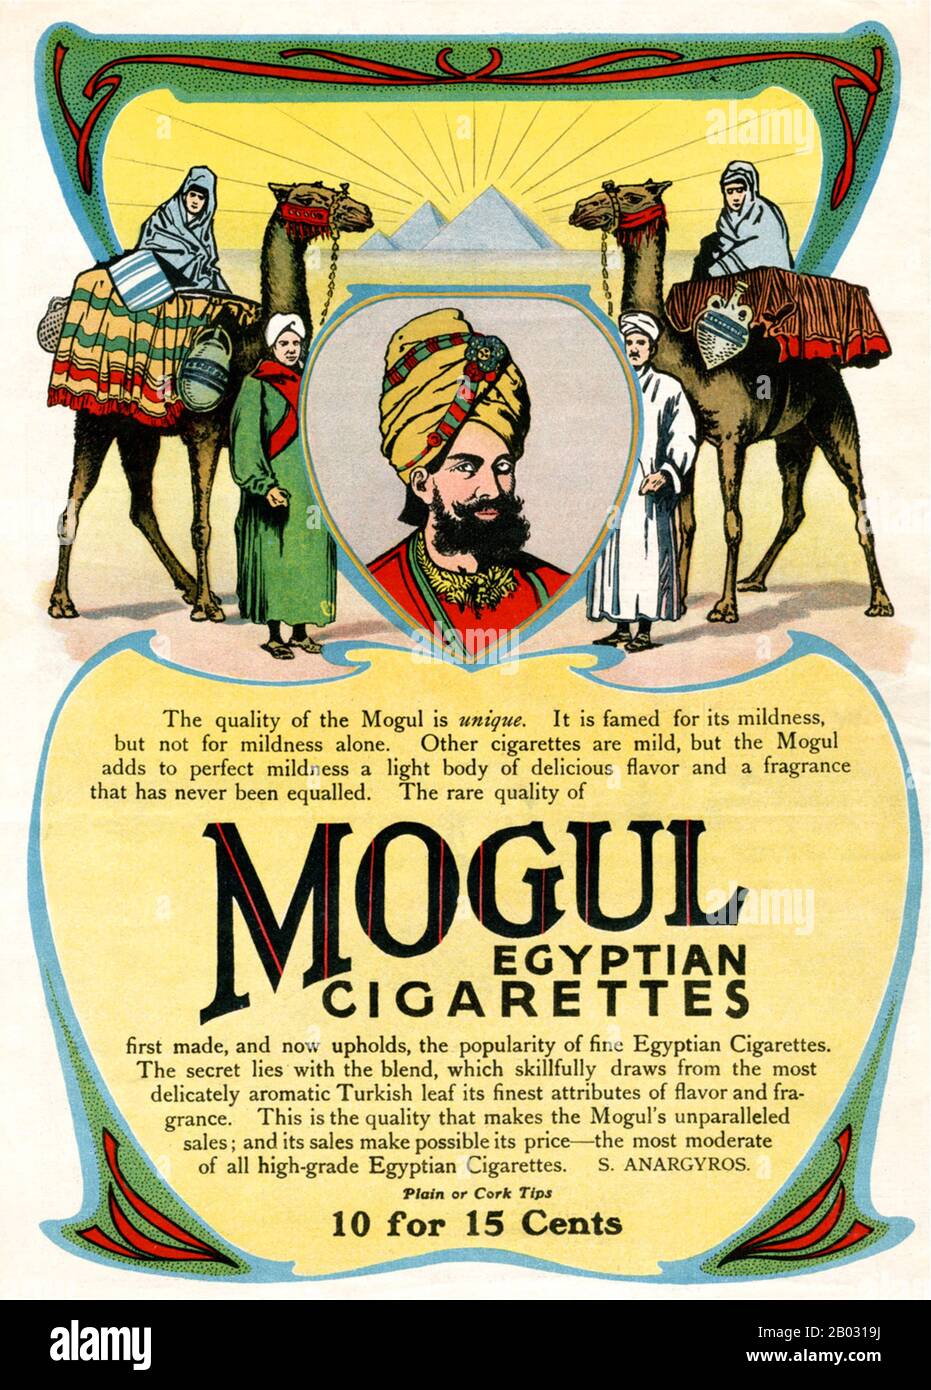 Au début des années 1900, les fabricants de cigarettes turques et égyptiennes ont triplé leurs ventes et sont devenus de grands concurrents des grandes marques. L'une des précédentes cigarettes de tabac turques, Mogul, a été introduite en 1892 par Soterios Anargyros, un tobacconiste grec basé à New York. Bien que probablement faite d'un mélange turc, les Moguls ont été annoncés comme des «Cigarettes égyptiennes». De nombreuses annonces Mogul ont présenté des modèles de haute société dans le vêtement occidental, plaçant la cigarette comme un produit de luxe, tandis que d'autres ont incorporé des motifs Orientalistes ou des modèles habillés en robe du Moyen-Orient. Banque D'Images